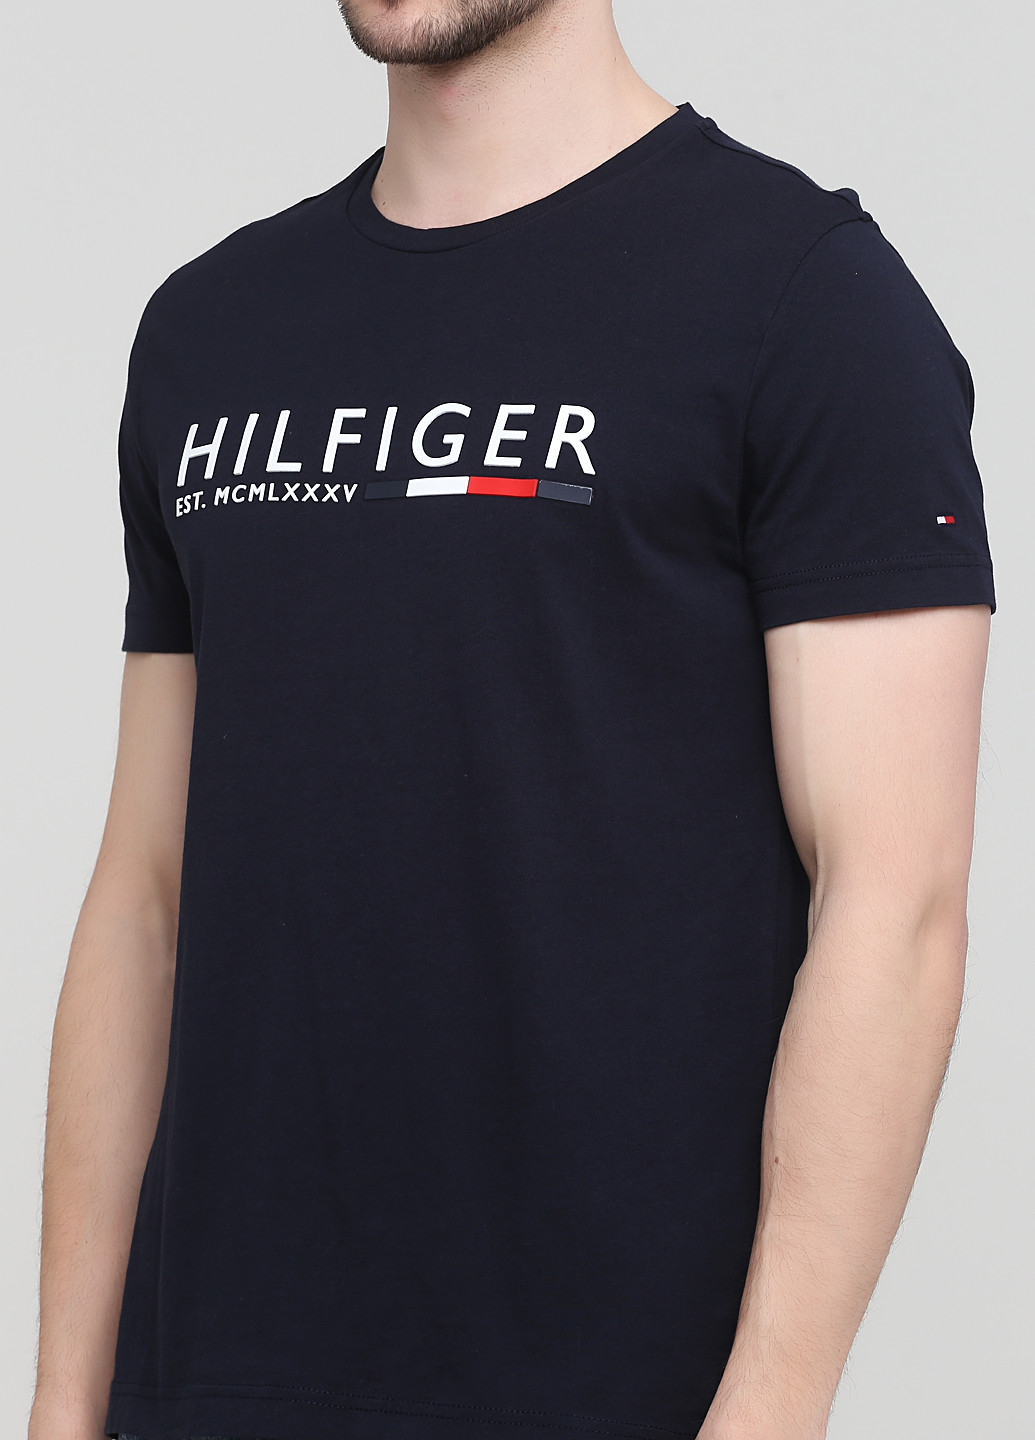 Темно-синяя летняя футболка Tommy Hilfiger